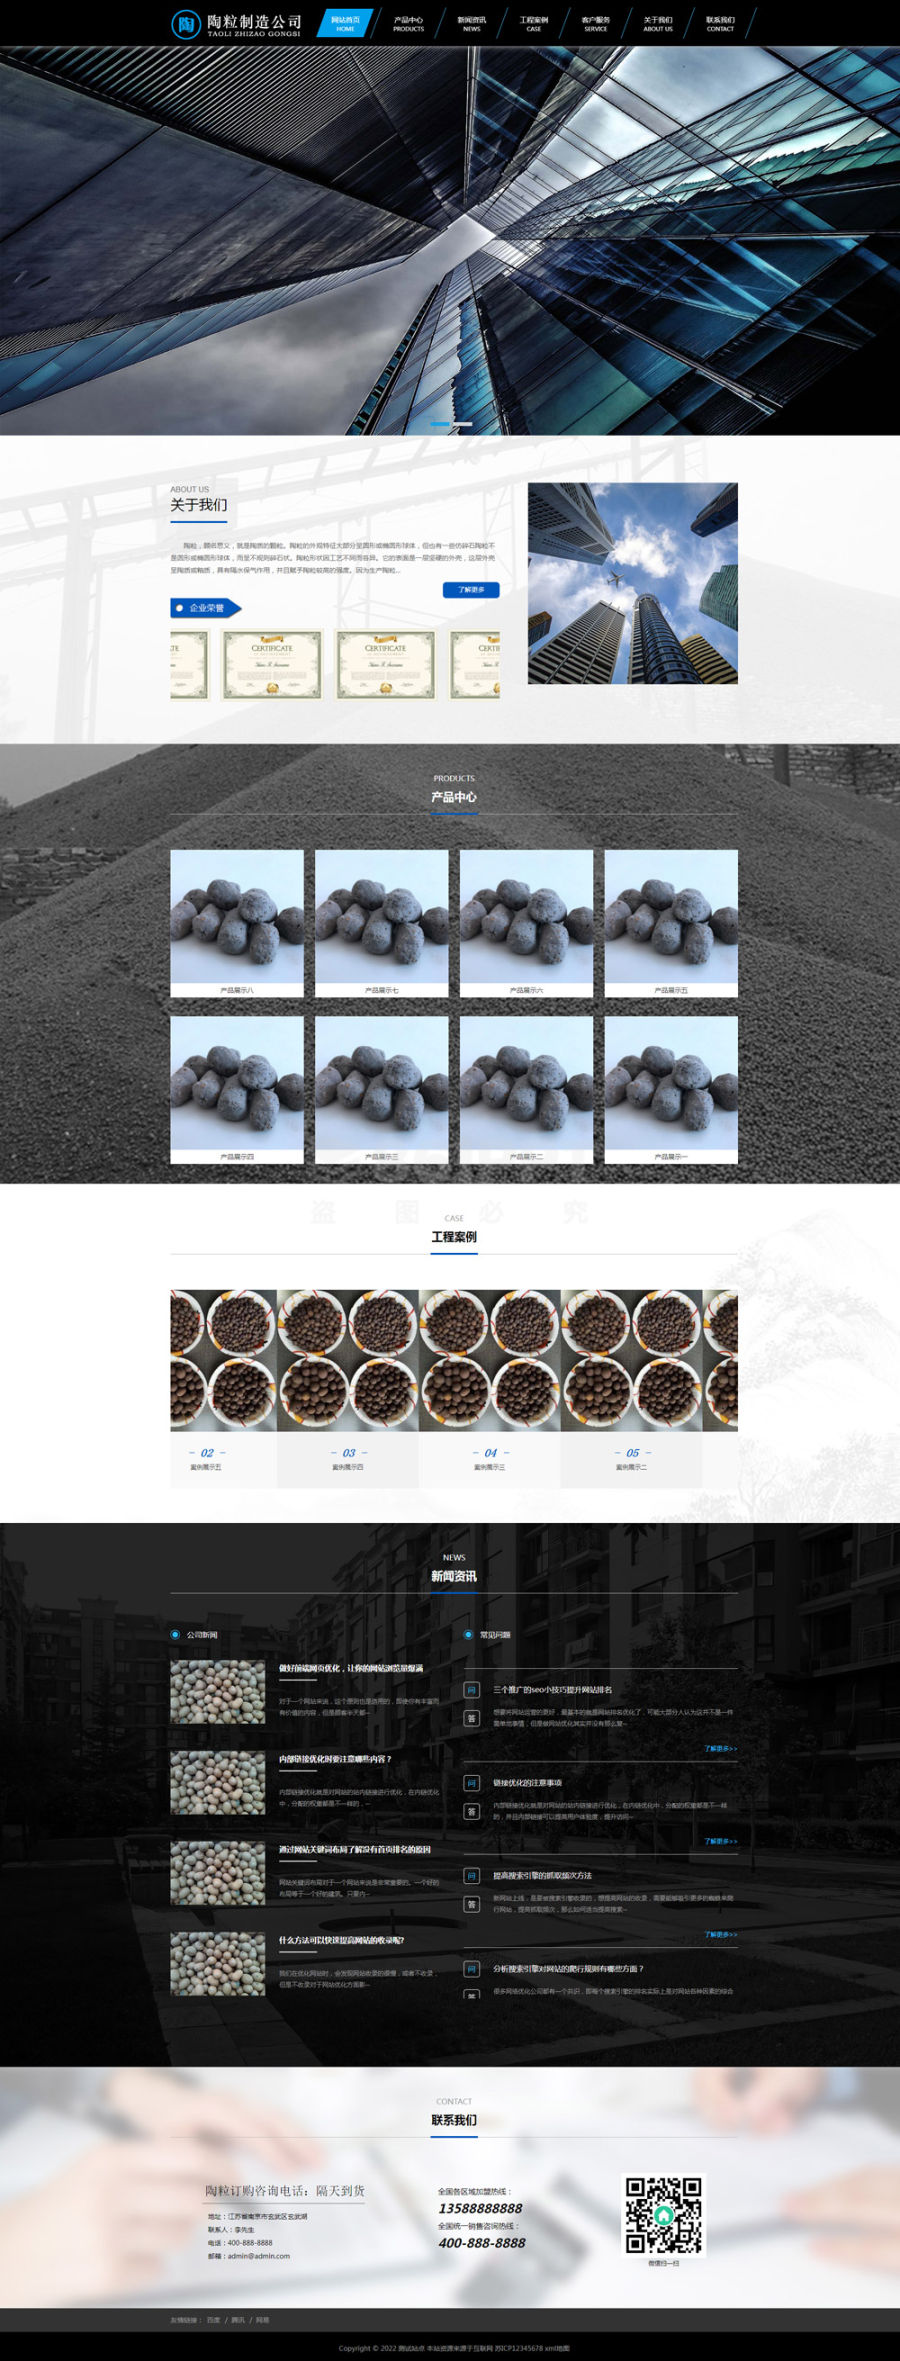 黑色的陶粒公司介绍营销展示型网站pbootcms模板